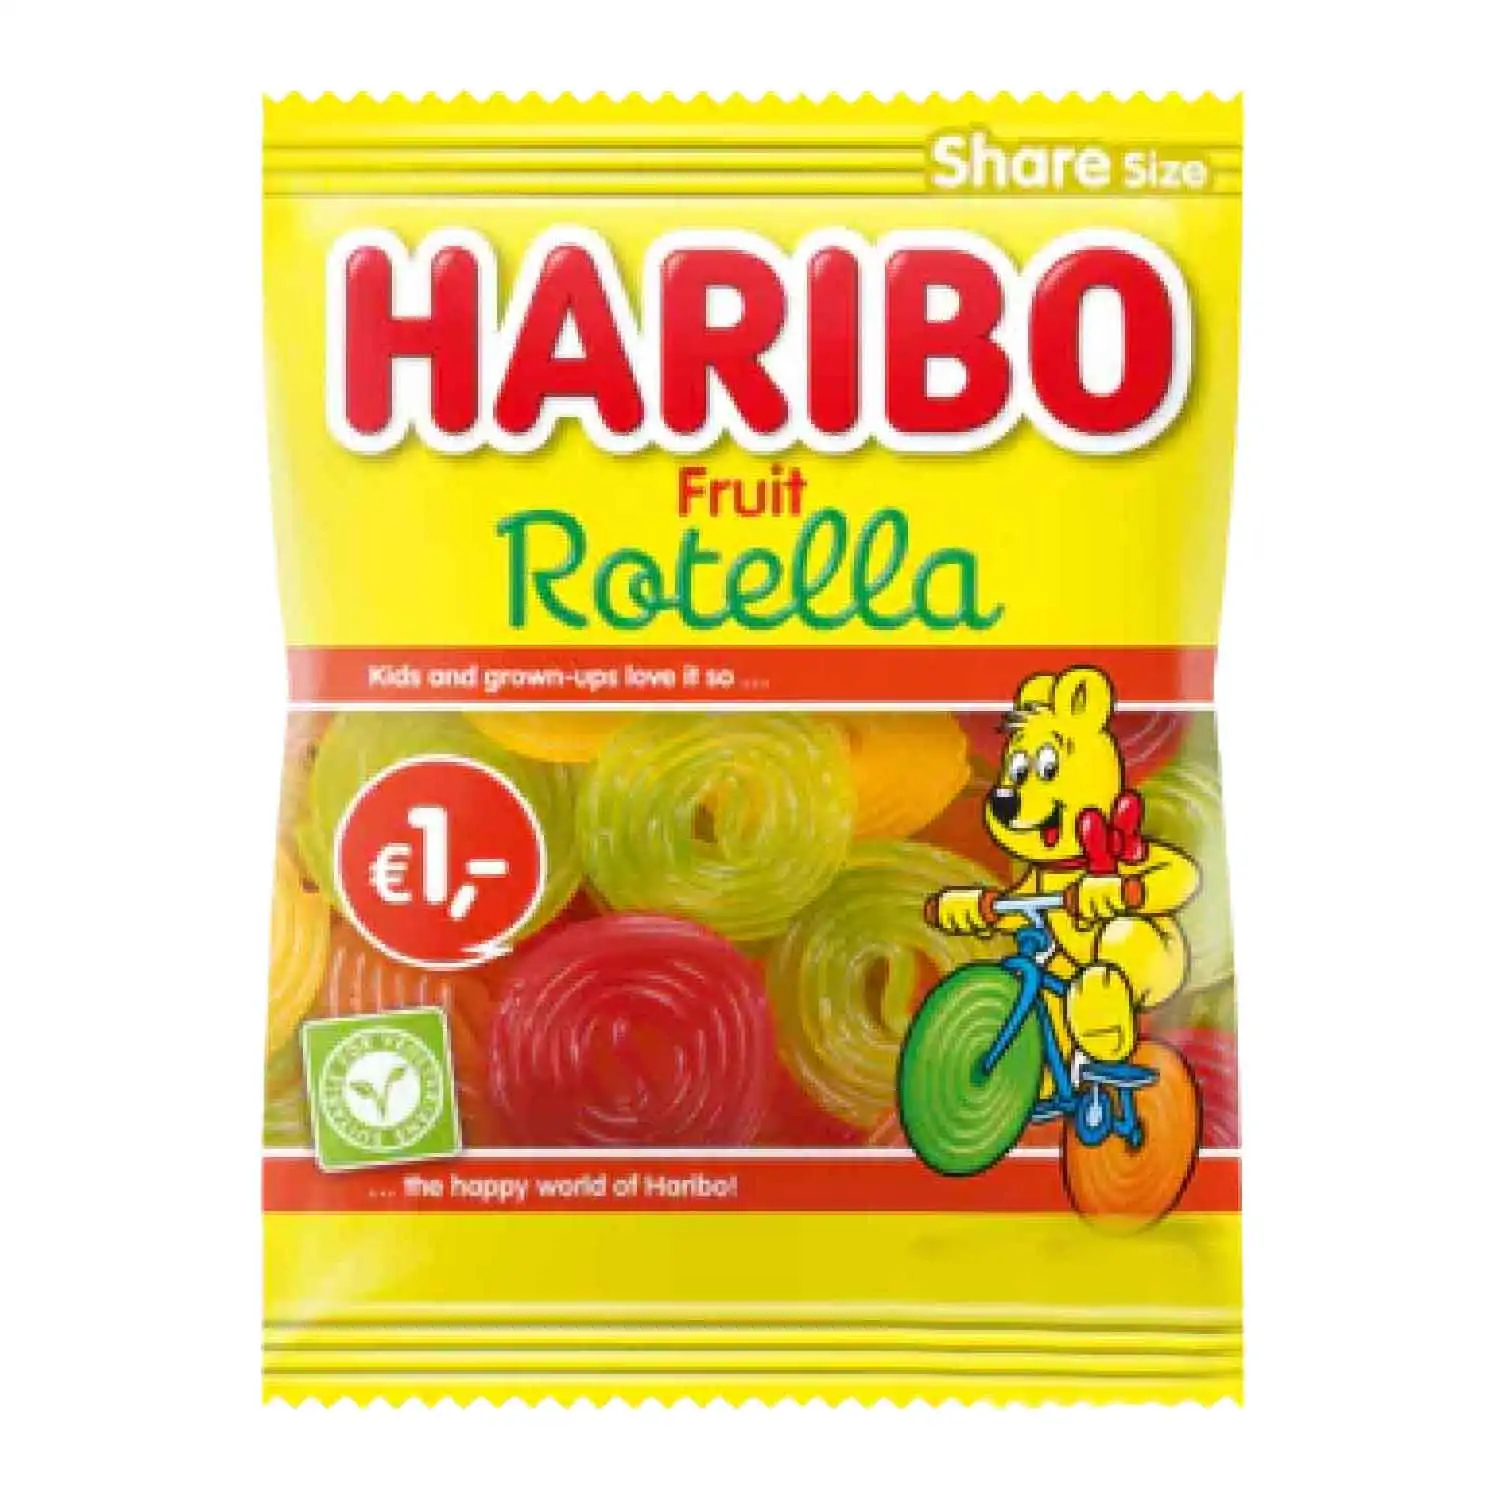 Haribo rotella fruit 135g - Buy at Real Tobacco